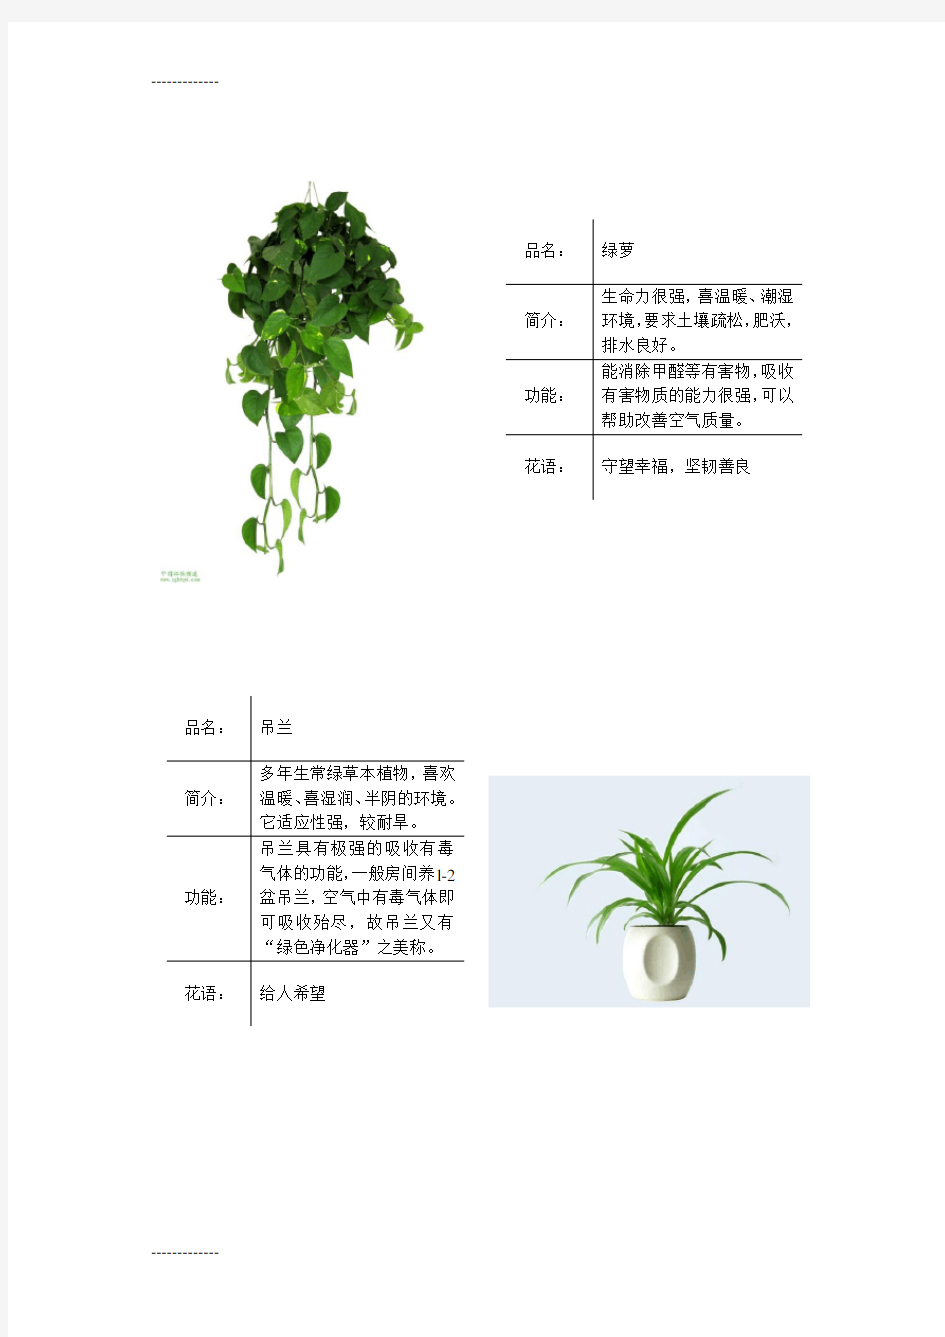 (整理)常见绿色植物图表